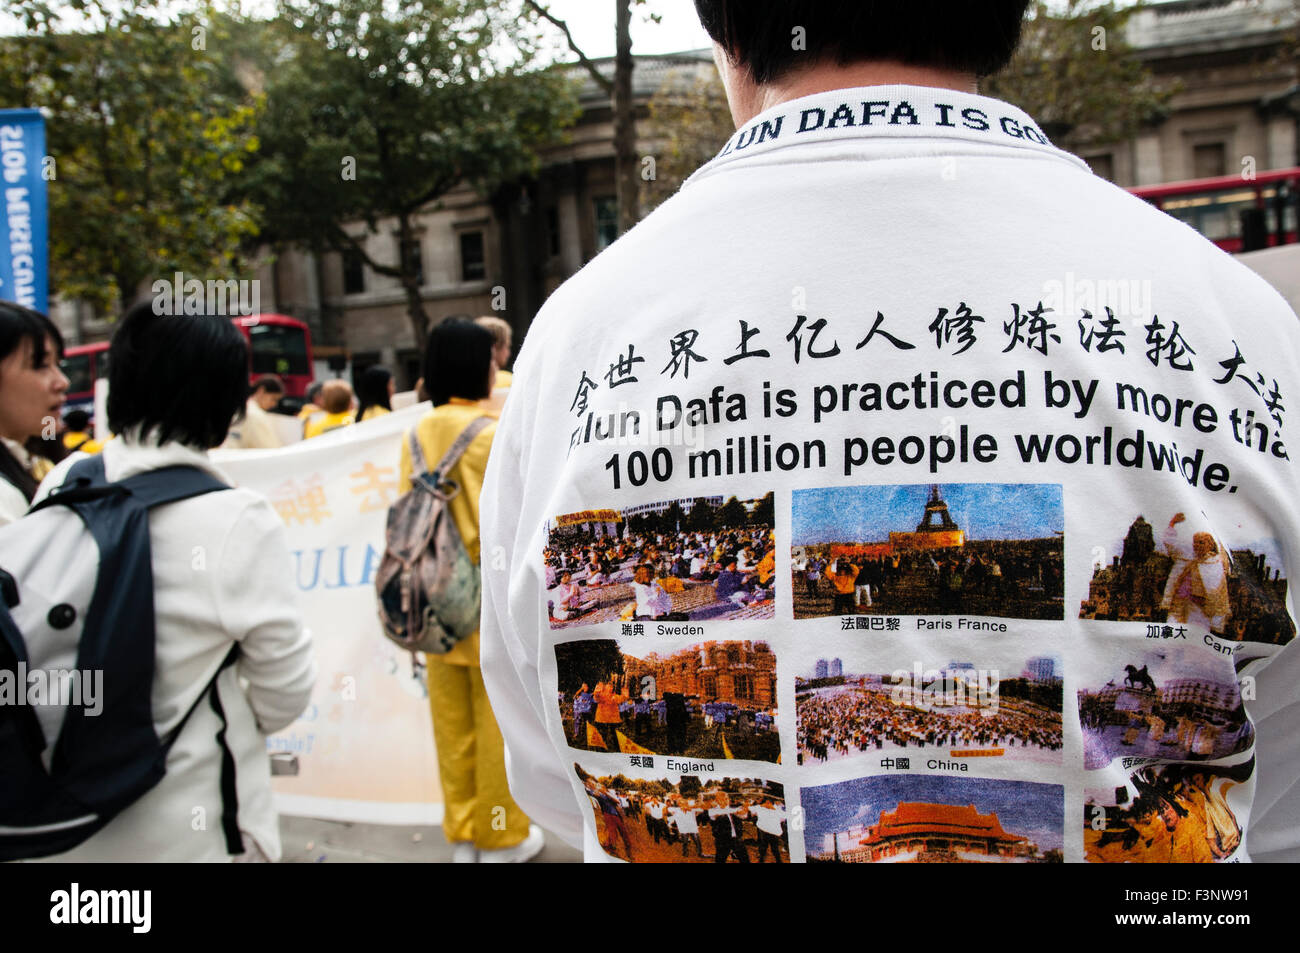 Londra, Regno Unito. 10 ottobre, 2015. Falun Dafa professionisti chiedono giustizia per il Presidente Jiang Zemin a una protesta nel centro di Londra (UK), 10 ottobre 2015. Credito: Noemi Gago/Alamy Live News Foto Stock